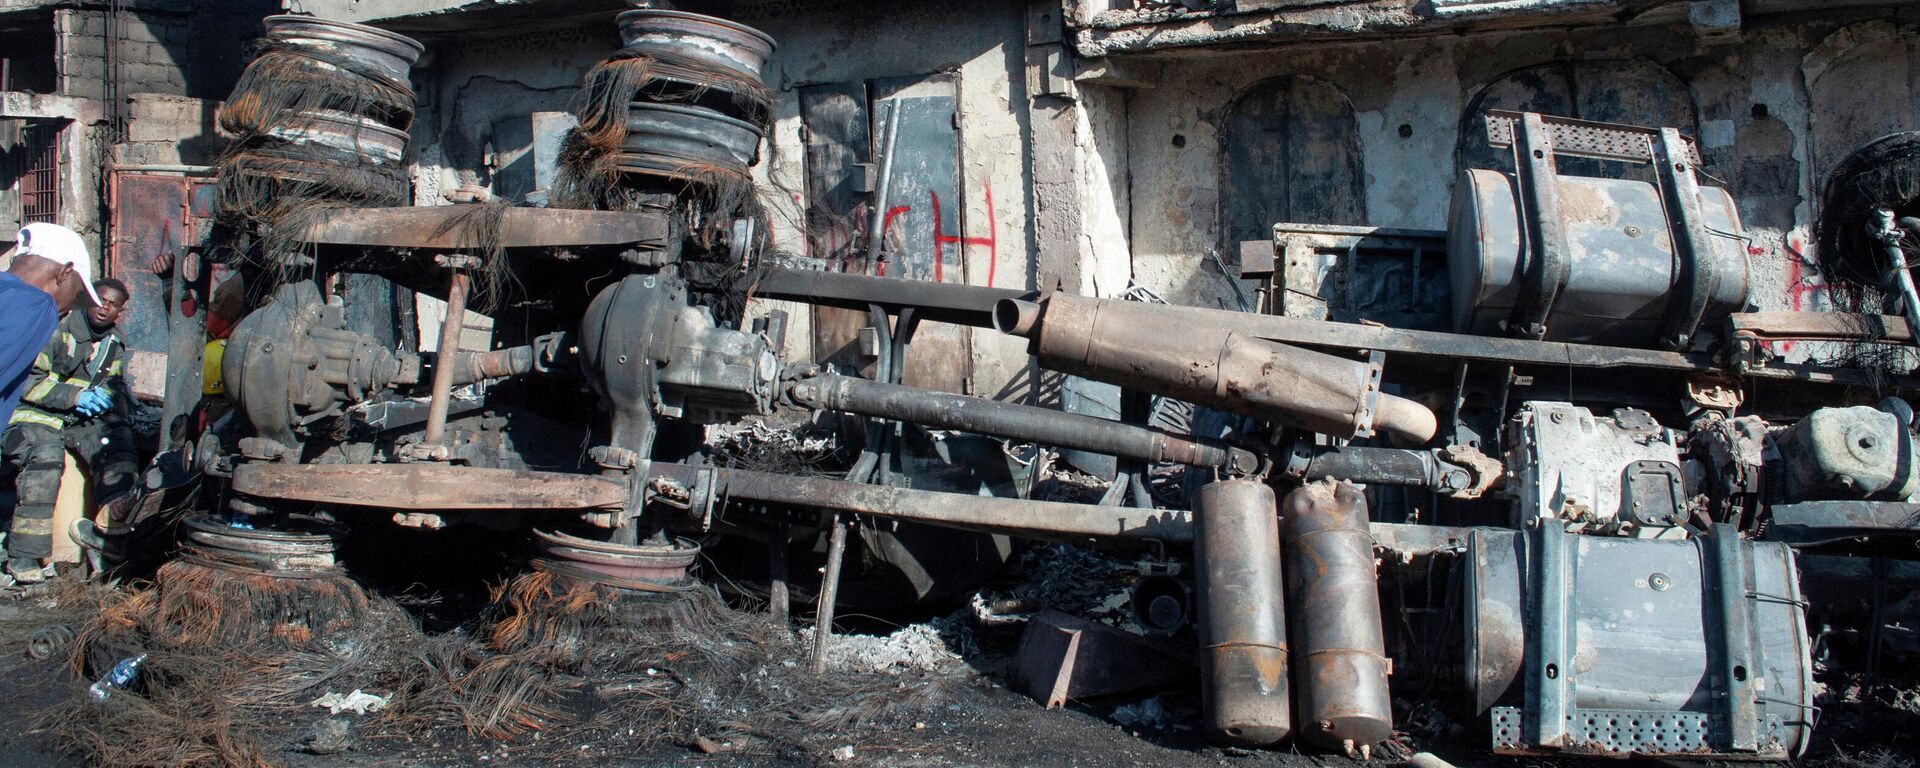 Explosión de camión cisterna en Haití - Sputnik Mundo, 1920, 14.12.2021